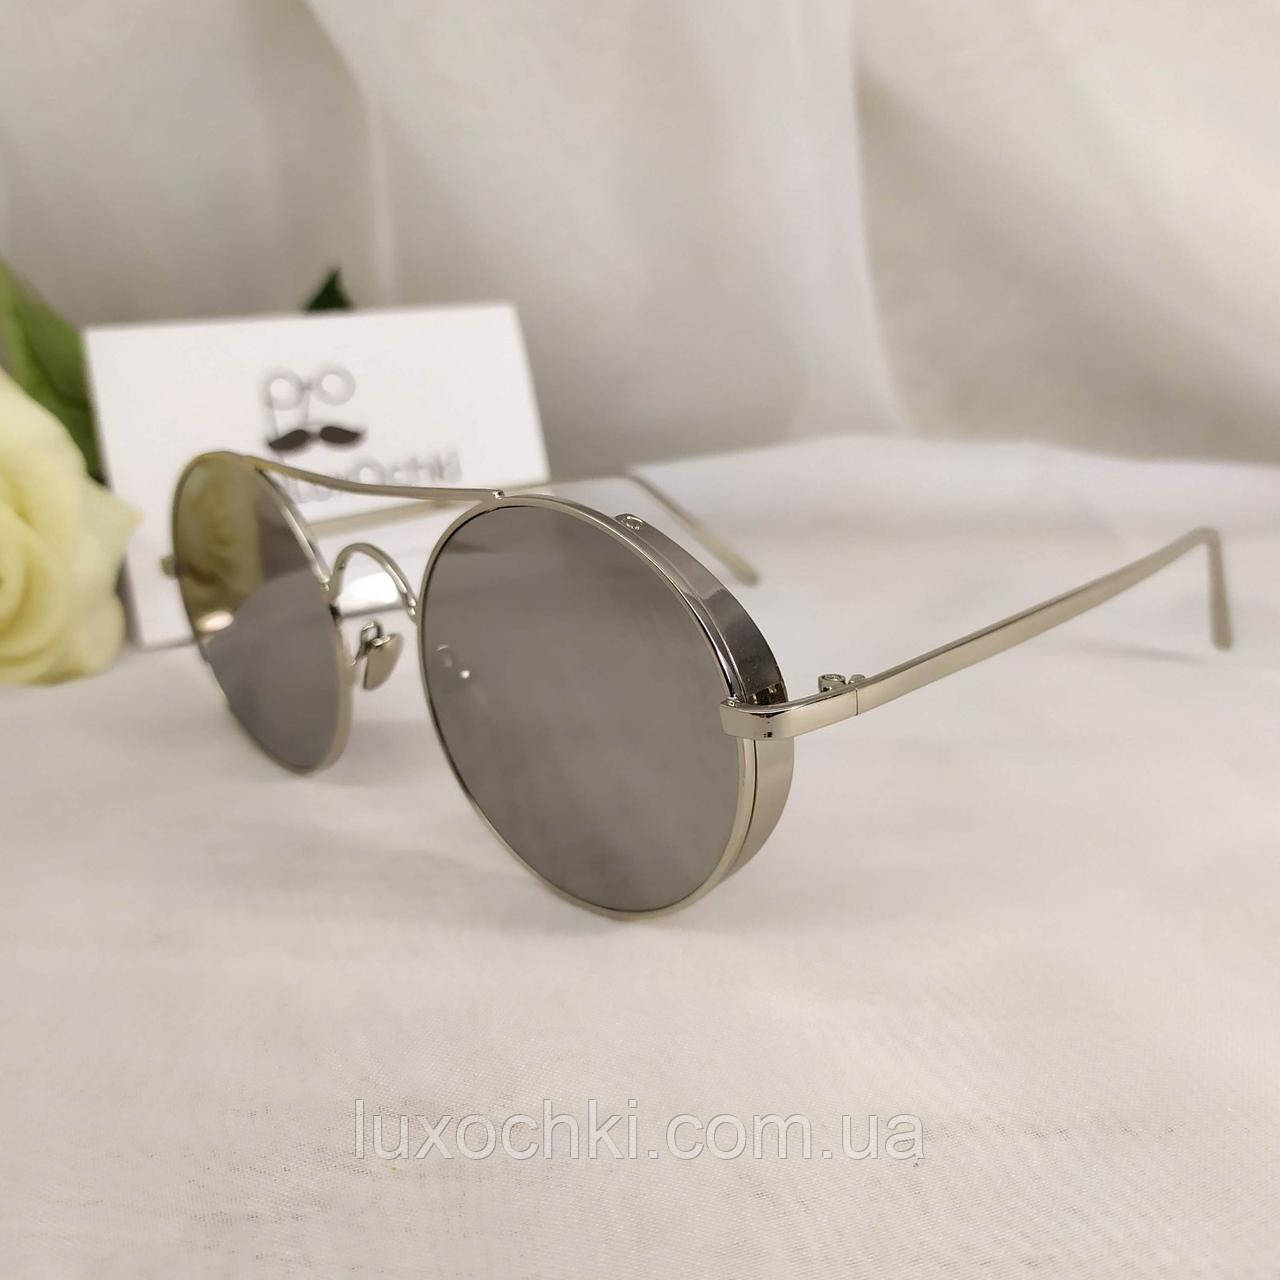 Круглые стильные солнцезащитные очки в металлической оправе с шорами зеркальные